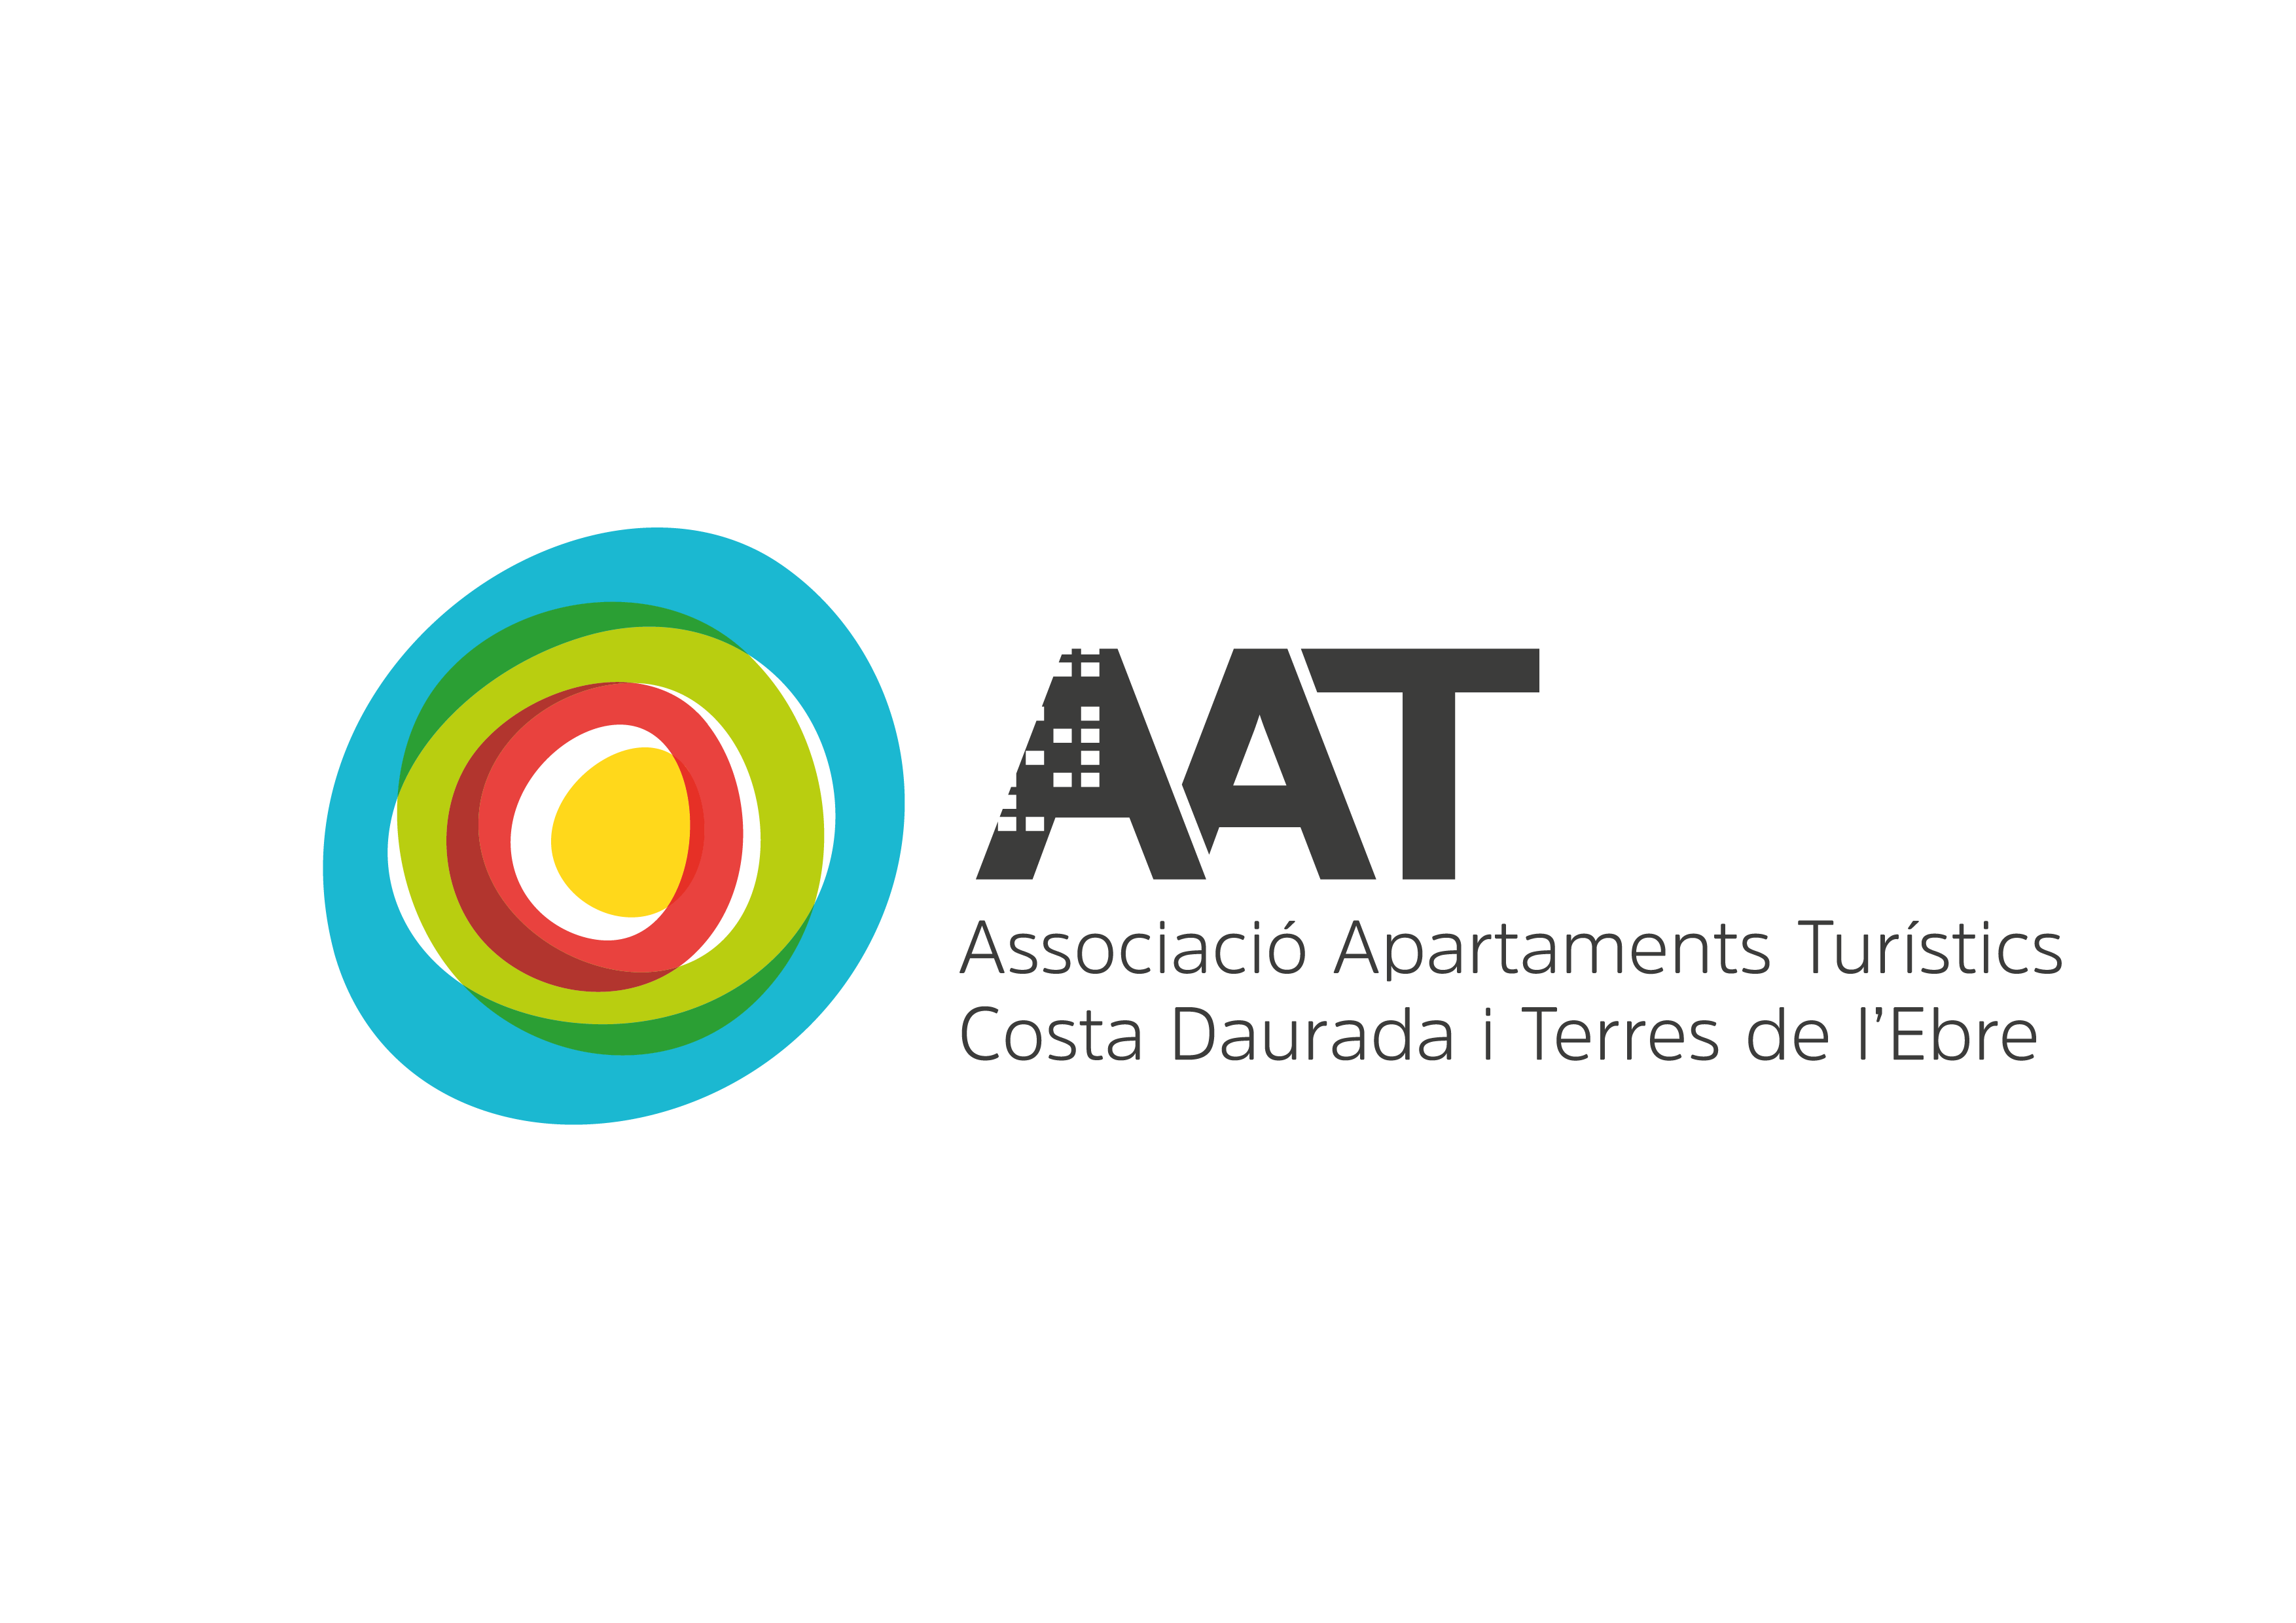 Логотип AAT. AAT logo. Логотип AAT Чехия. AAT логотип для печати.